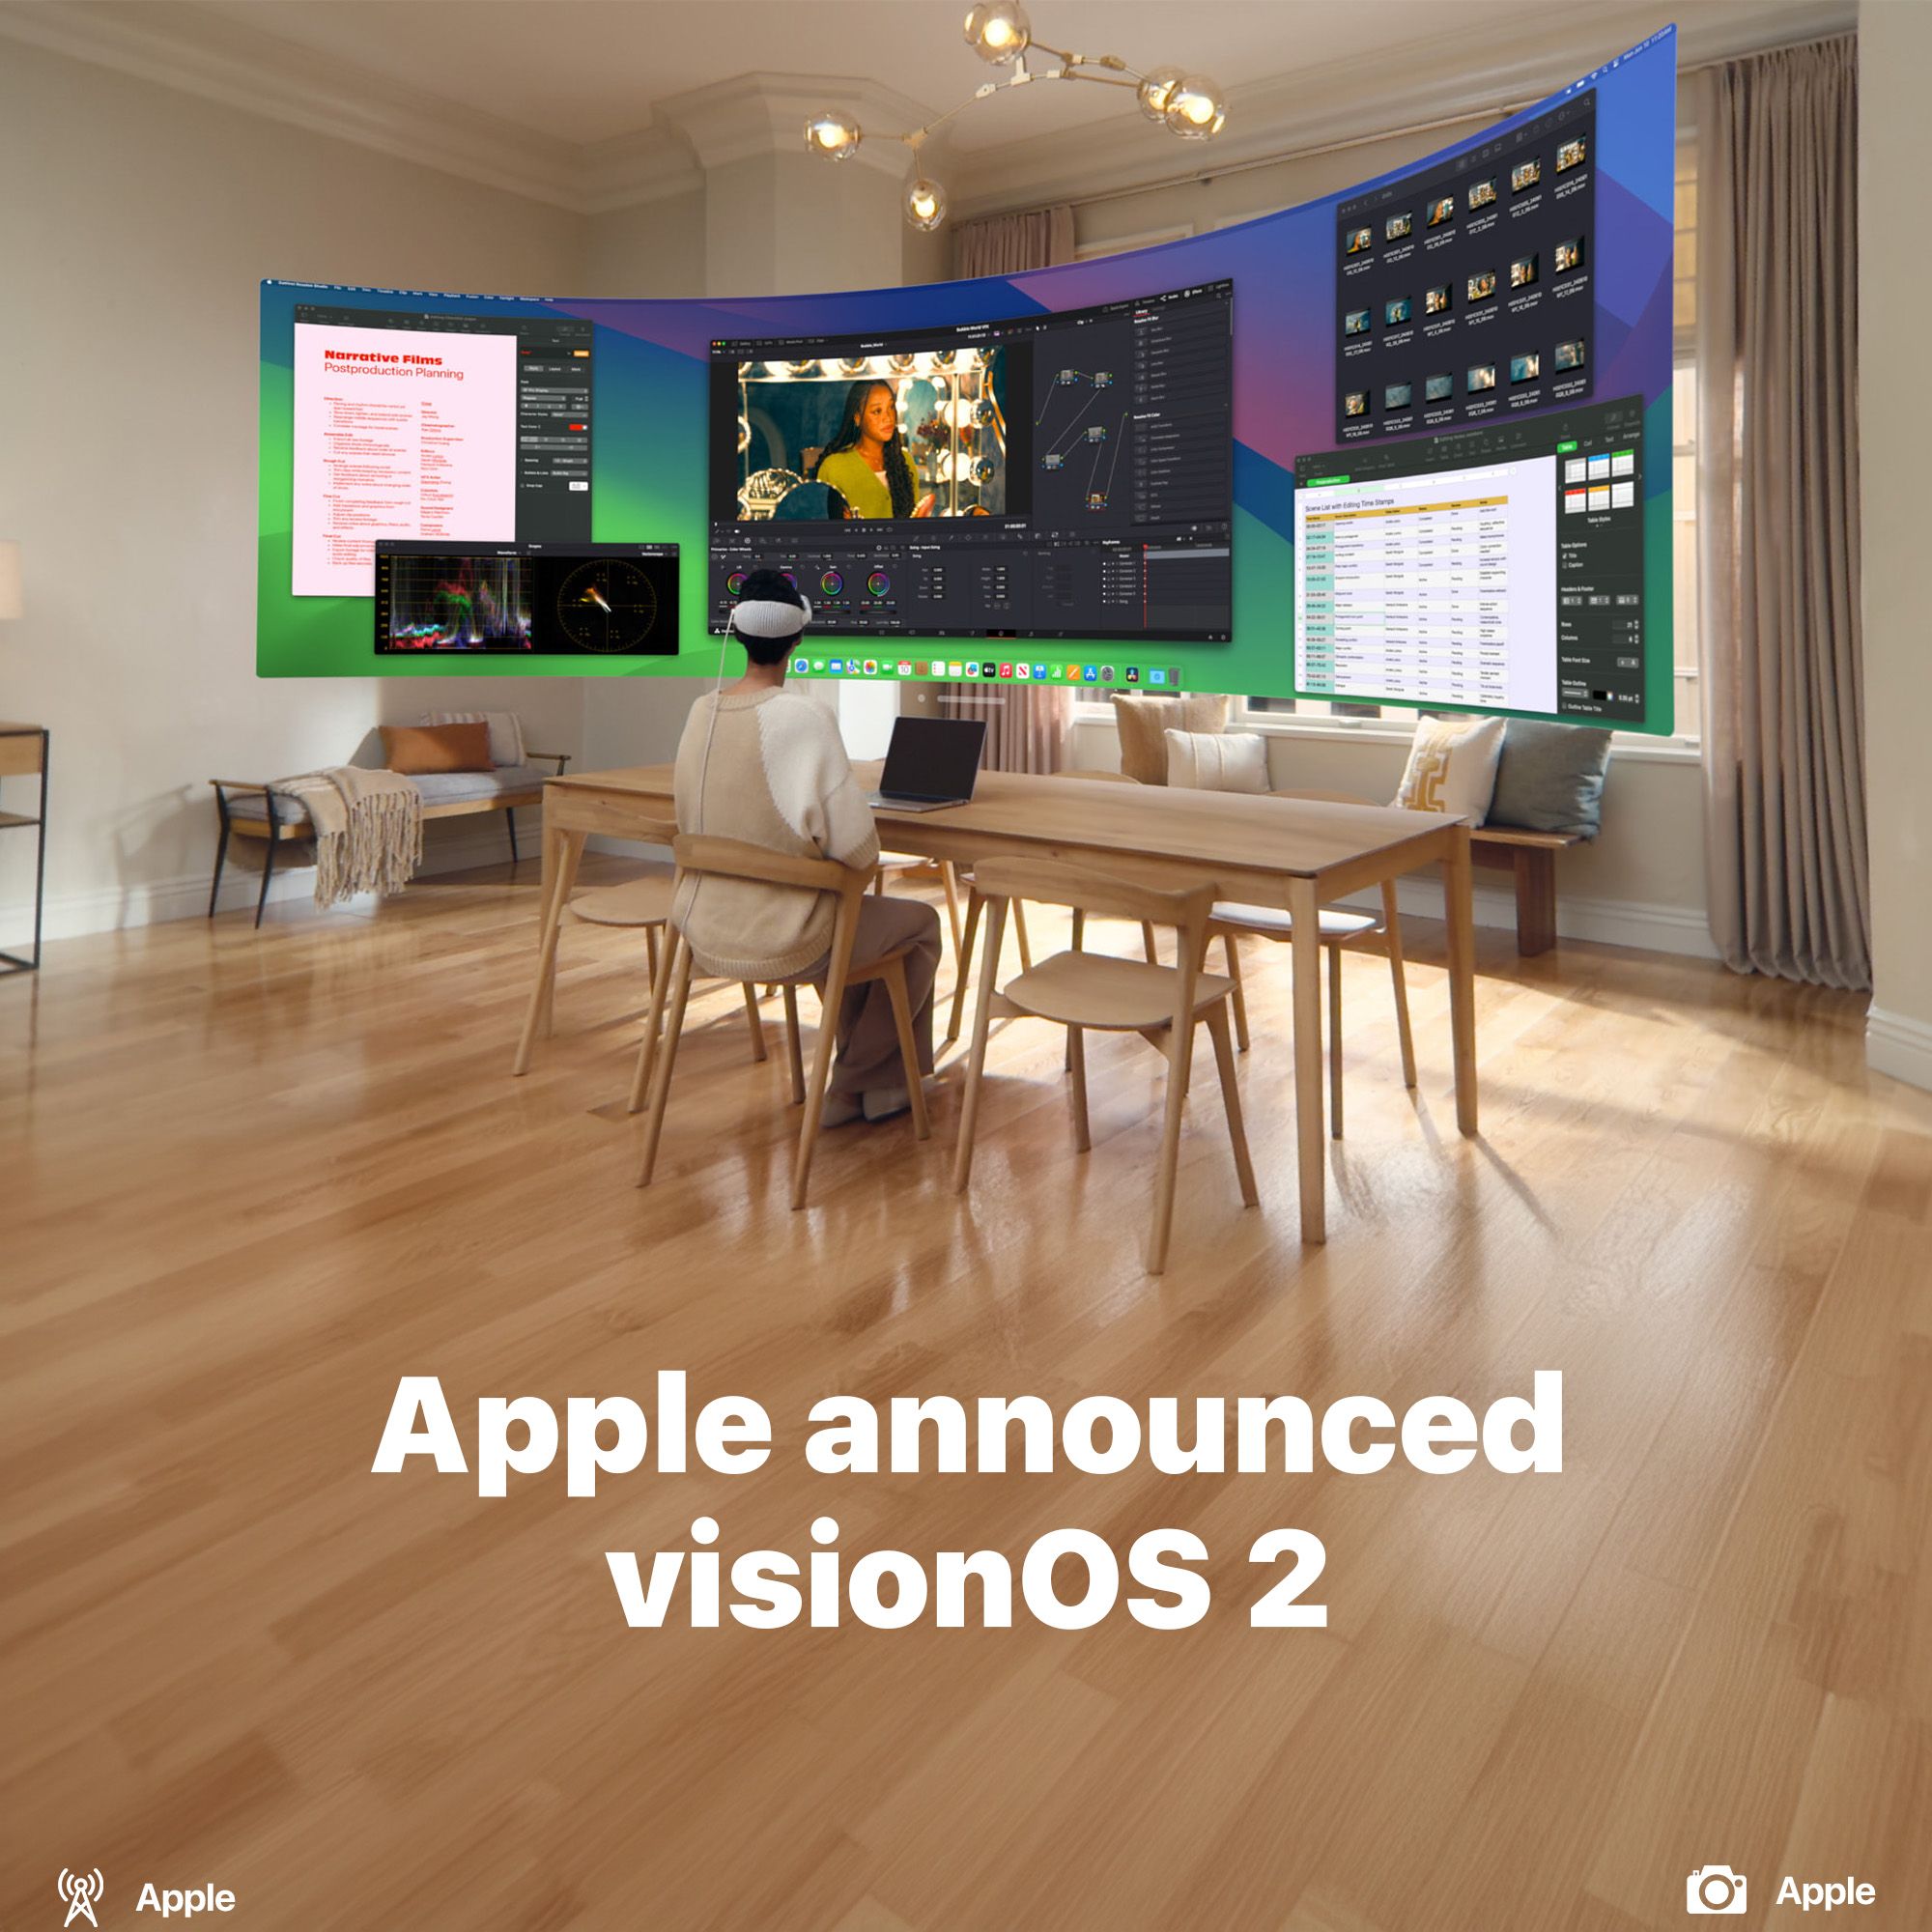 Apple announced visionOS 2